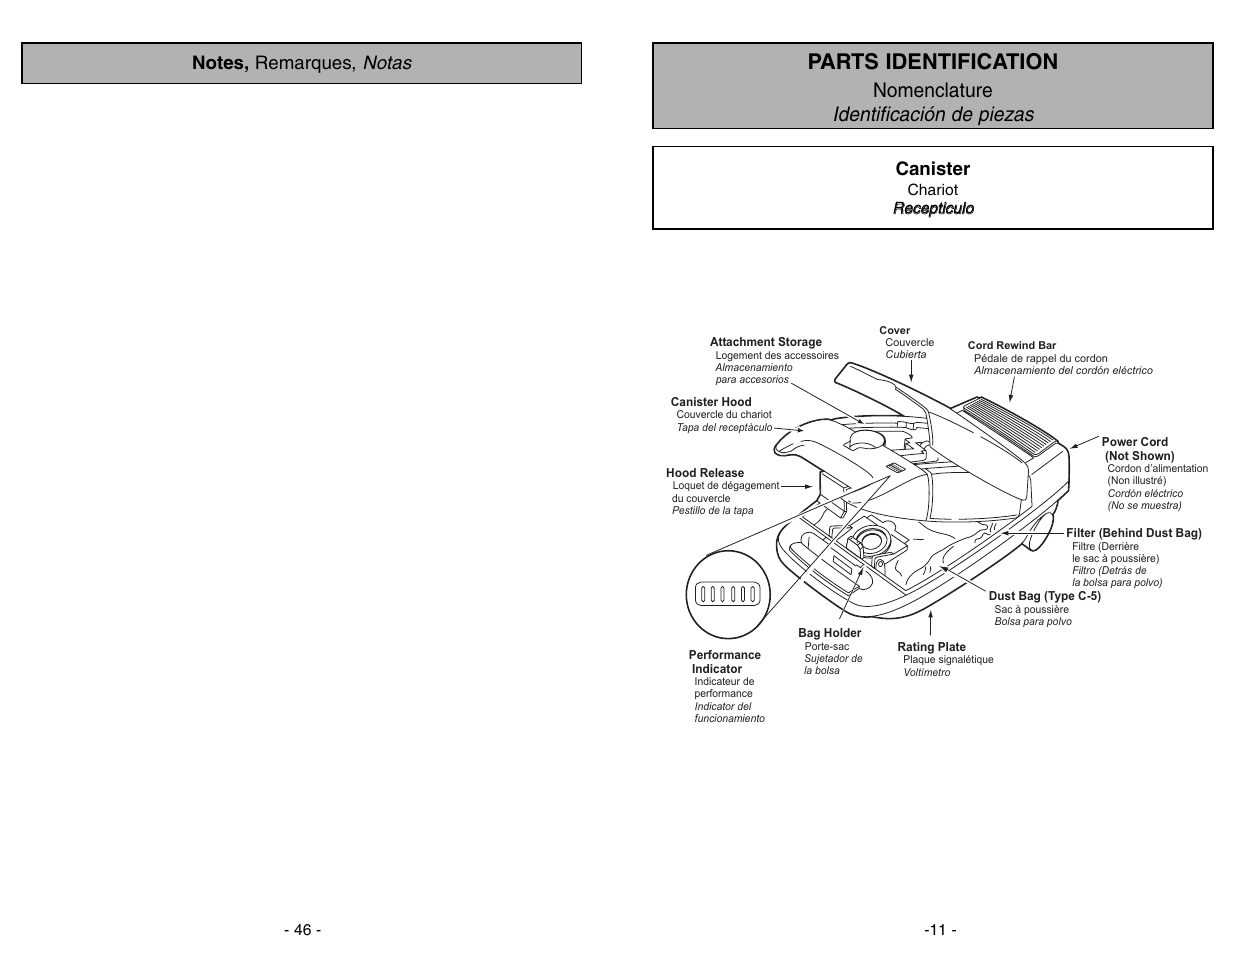 Parts identification, Nomenclature identificación de piezas, Canister | Panasonic MC-V9644 Manuel d'utilisation | Page 11 / 56